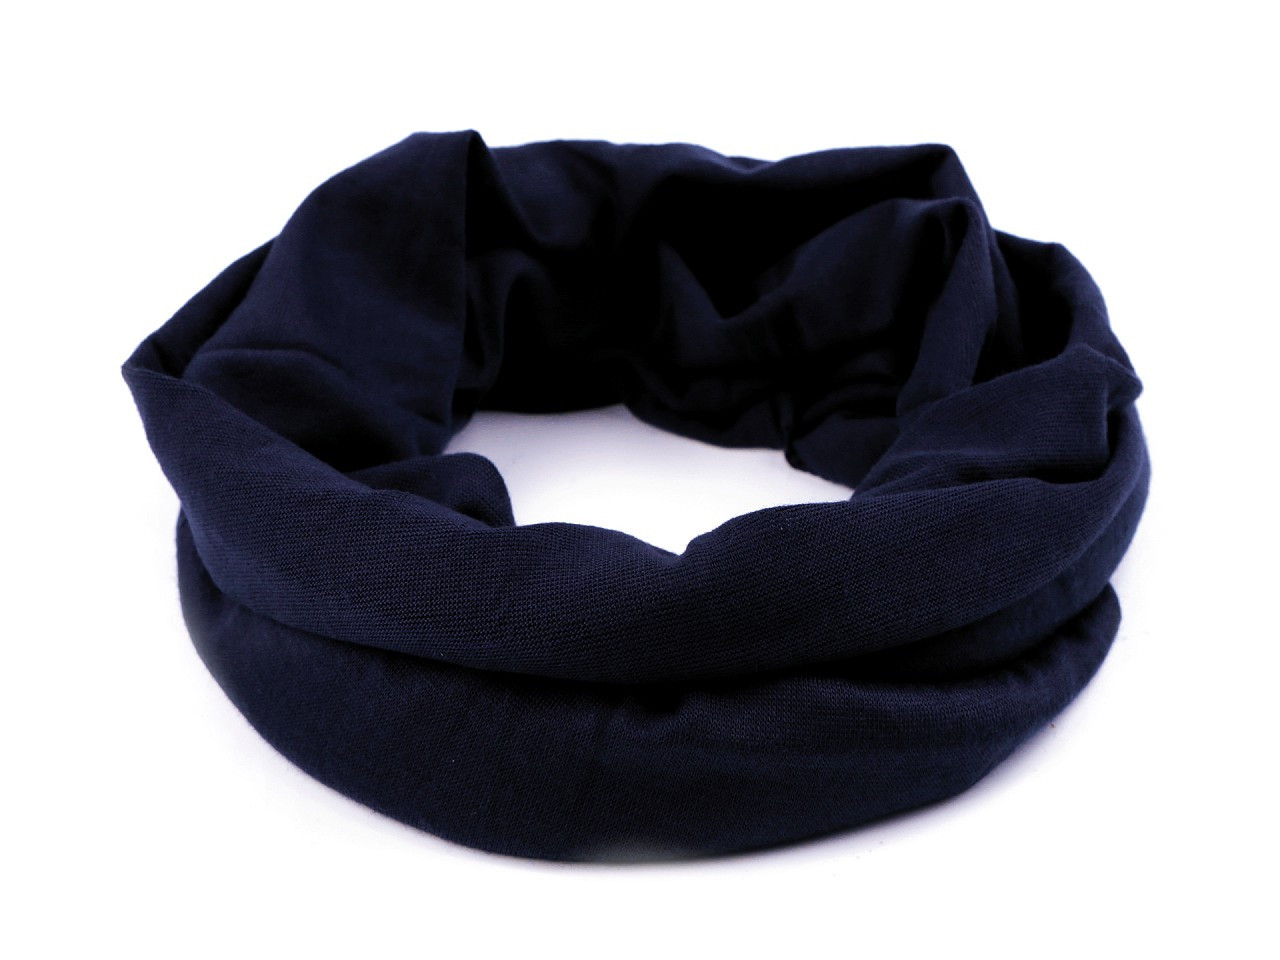 Multifunkční šátek pružný, bezešvý, jednobarevný, barva 17 modrá temná